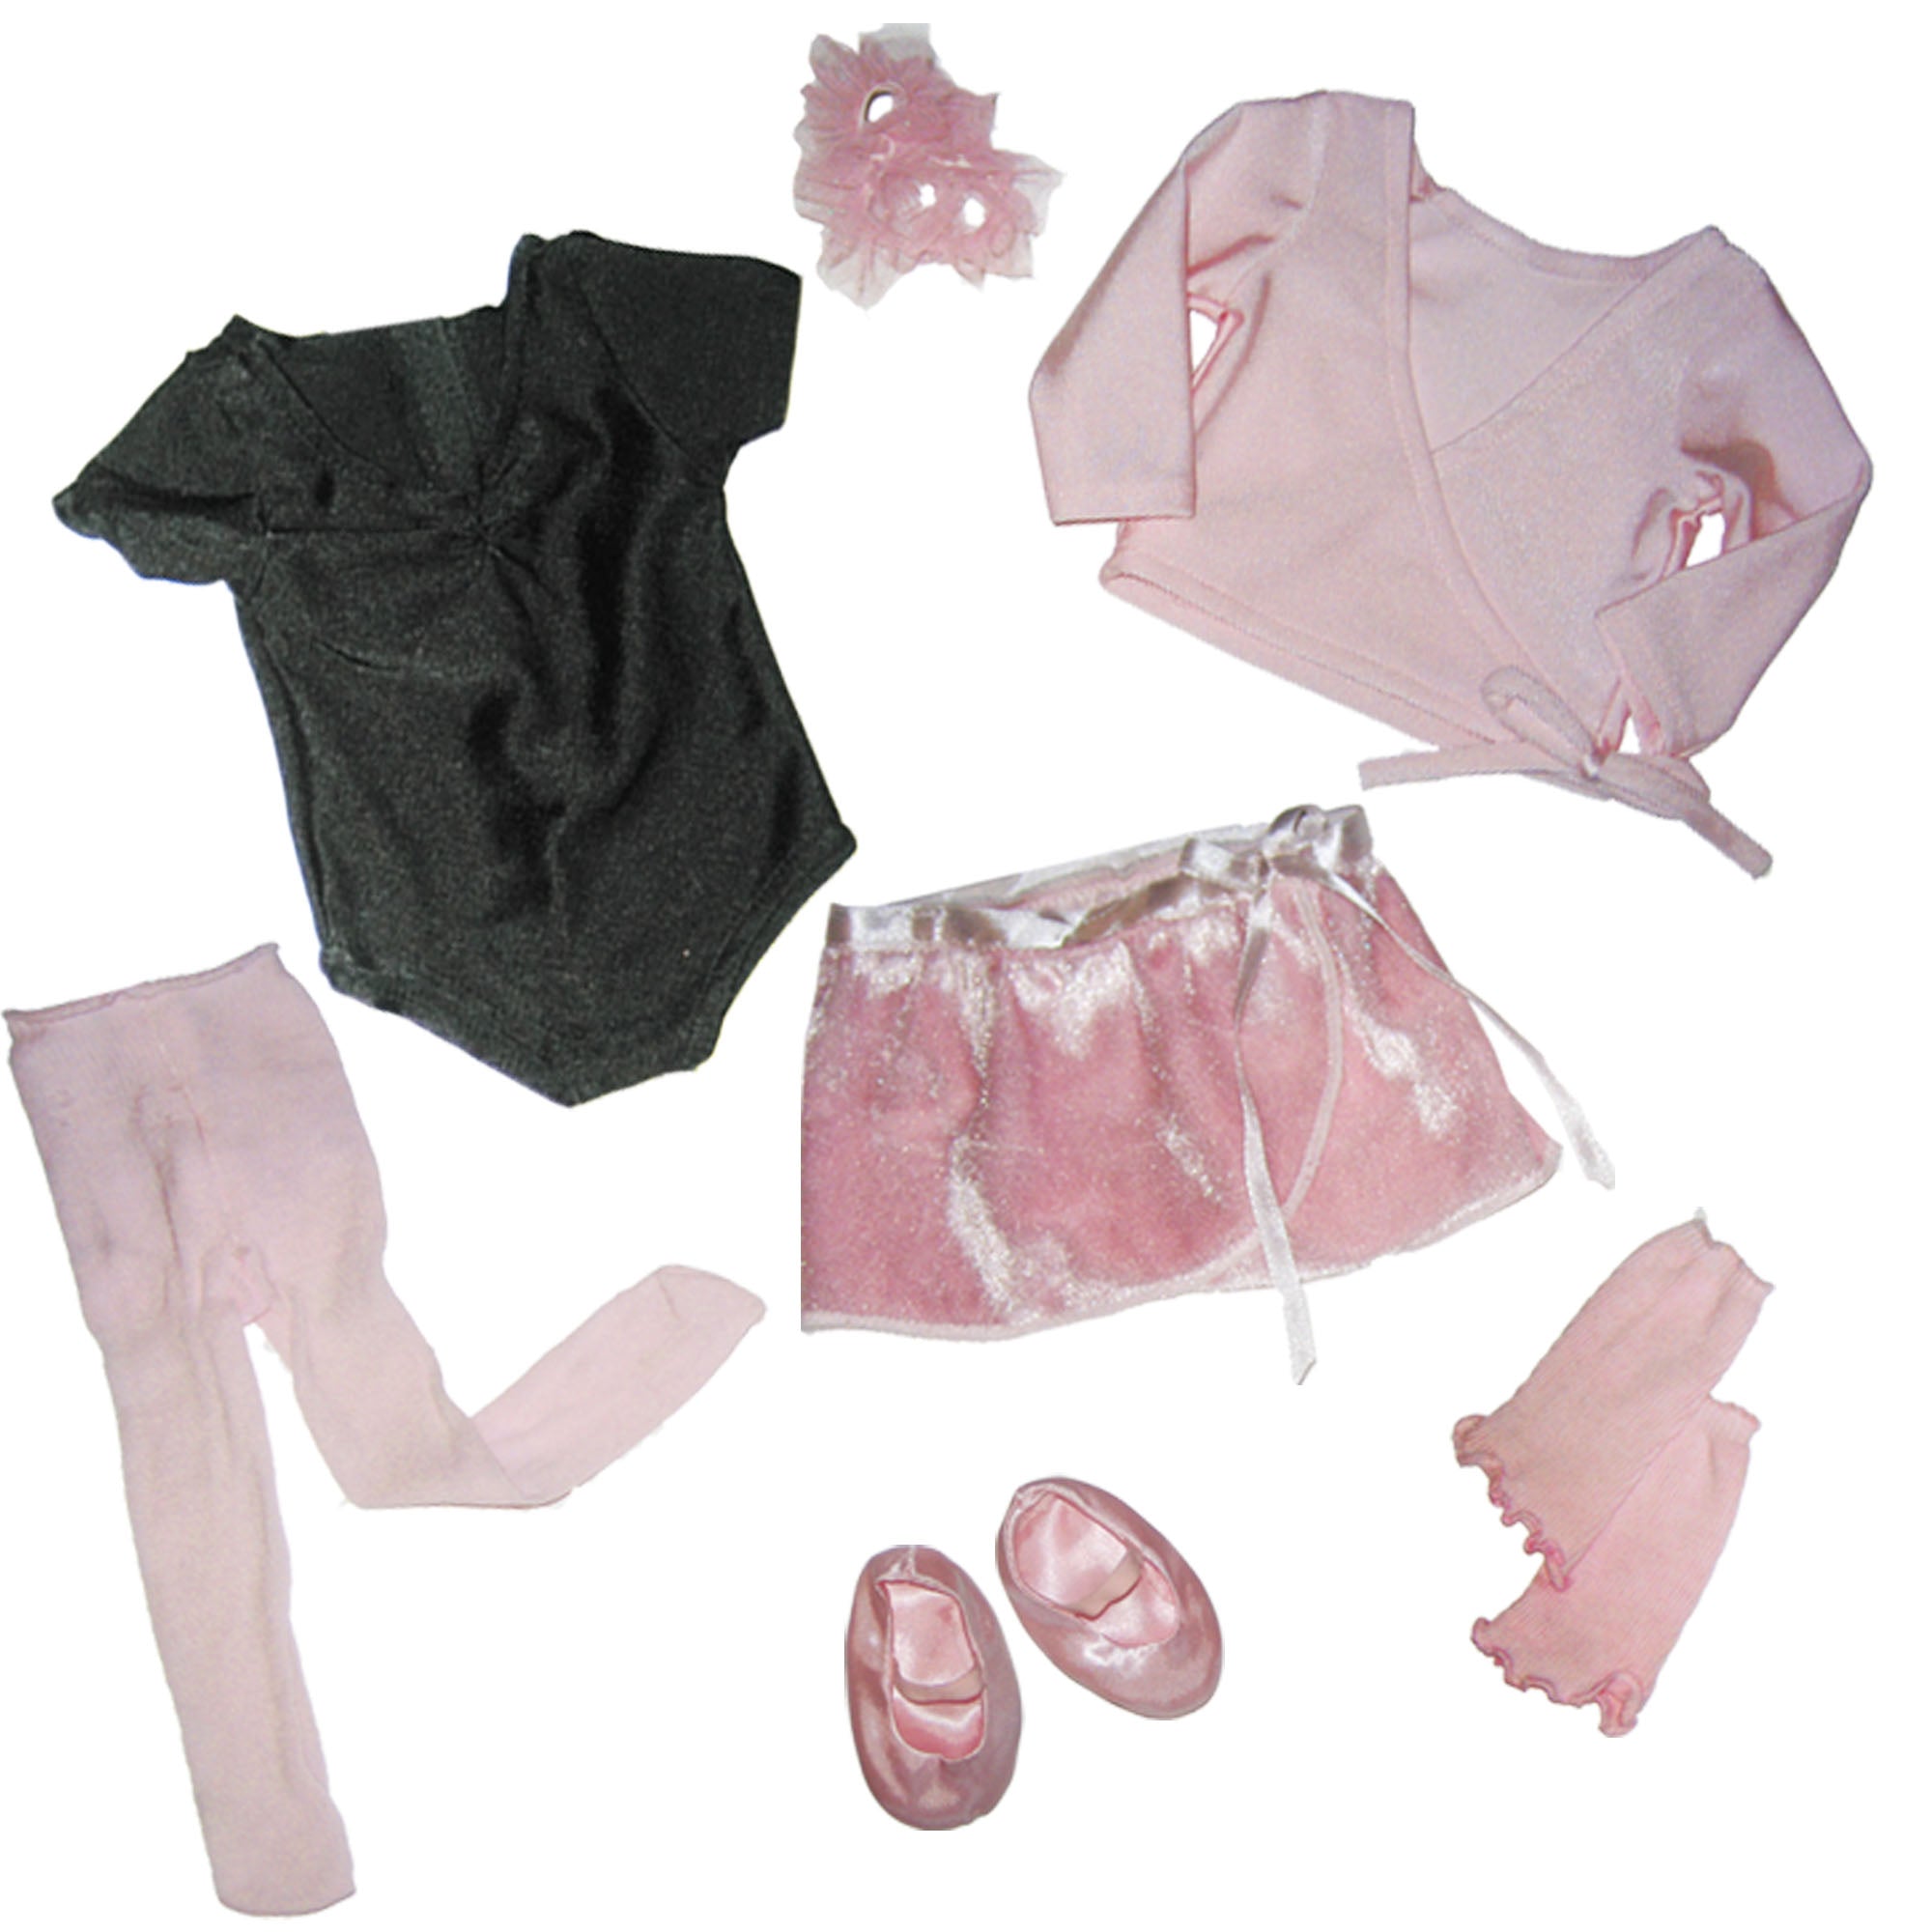 Sophia's - 18" Doll - Ballet Leotard Set + Ballet Sweater Set - Light Pink (copy)